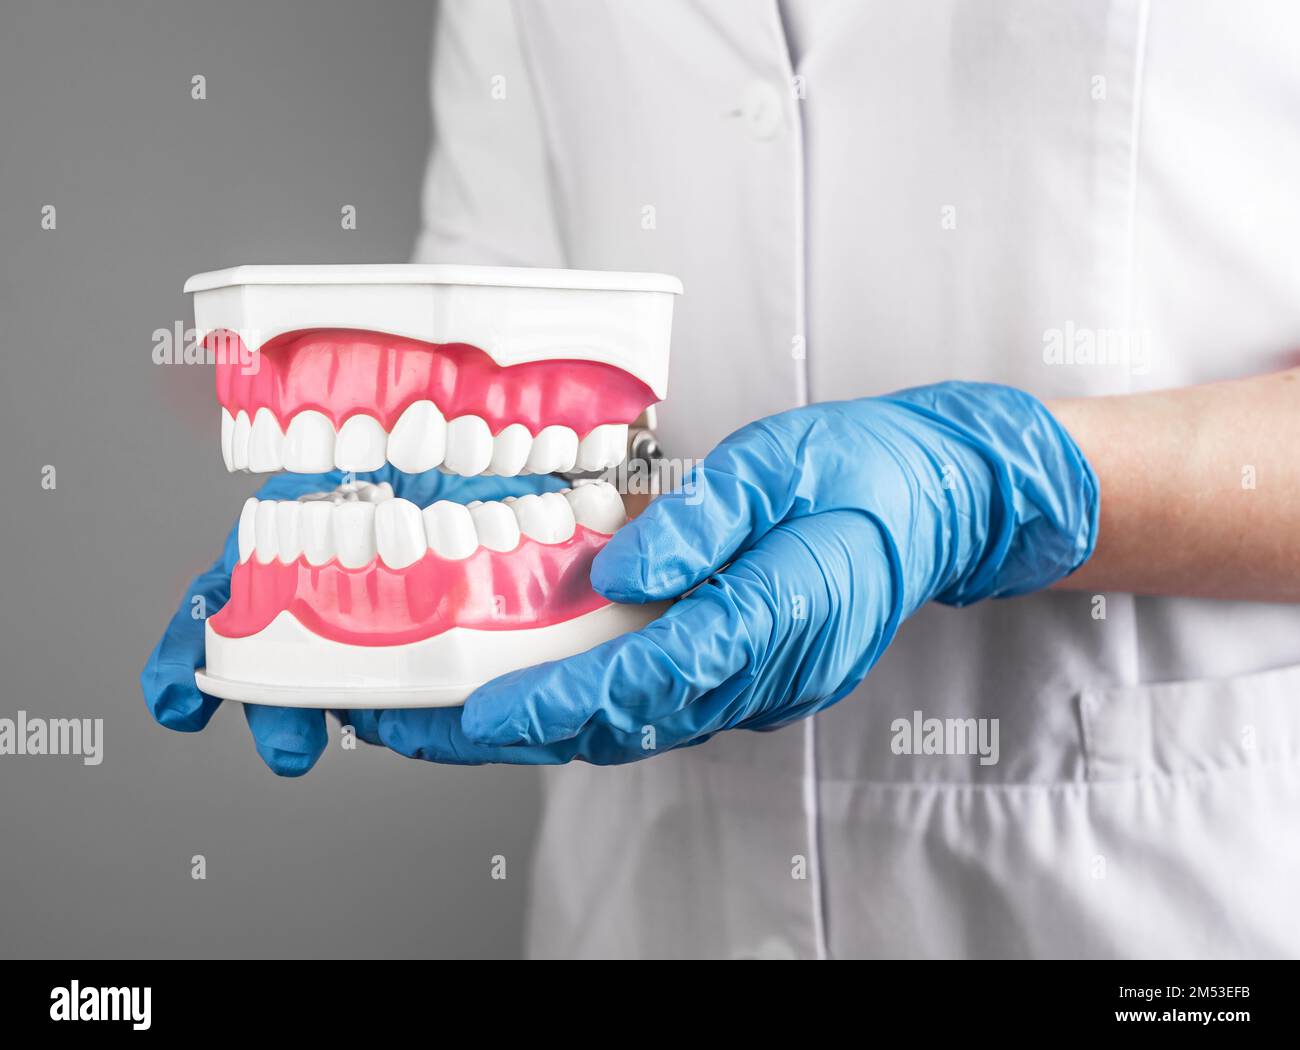 Dentista sosteniendo mandíbula de dientes sanos blancos. Odontología, concepto de cuidado de la salud oral dental. Foto de alta calidad Foto de stock